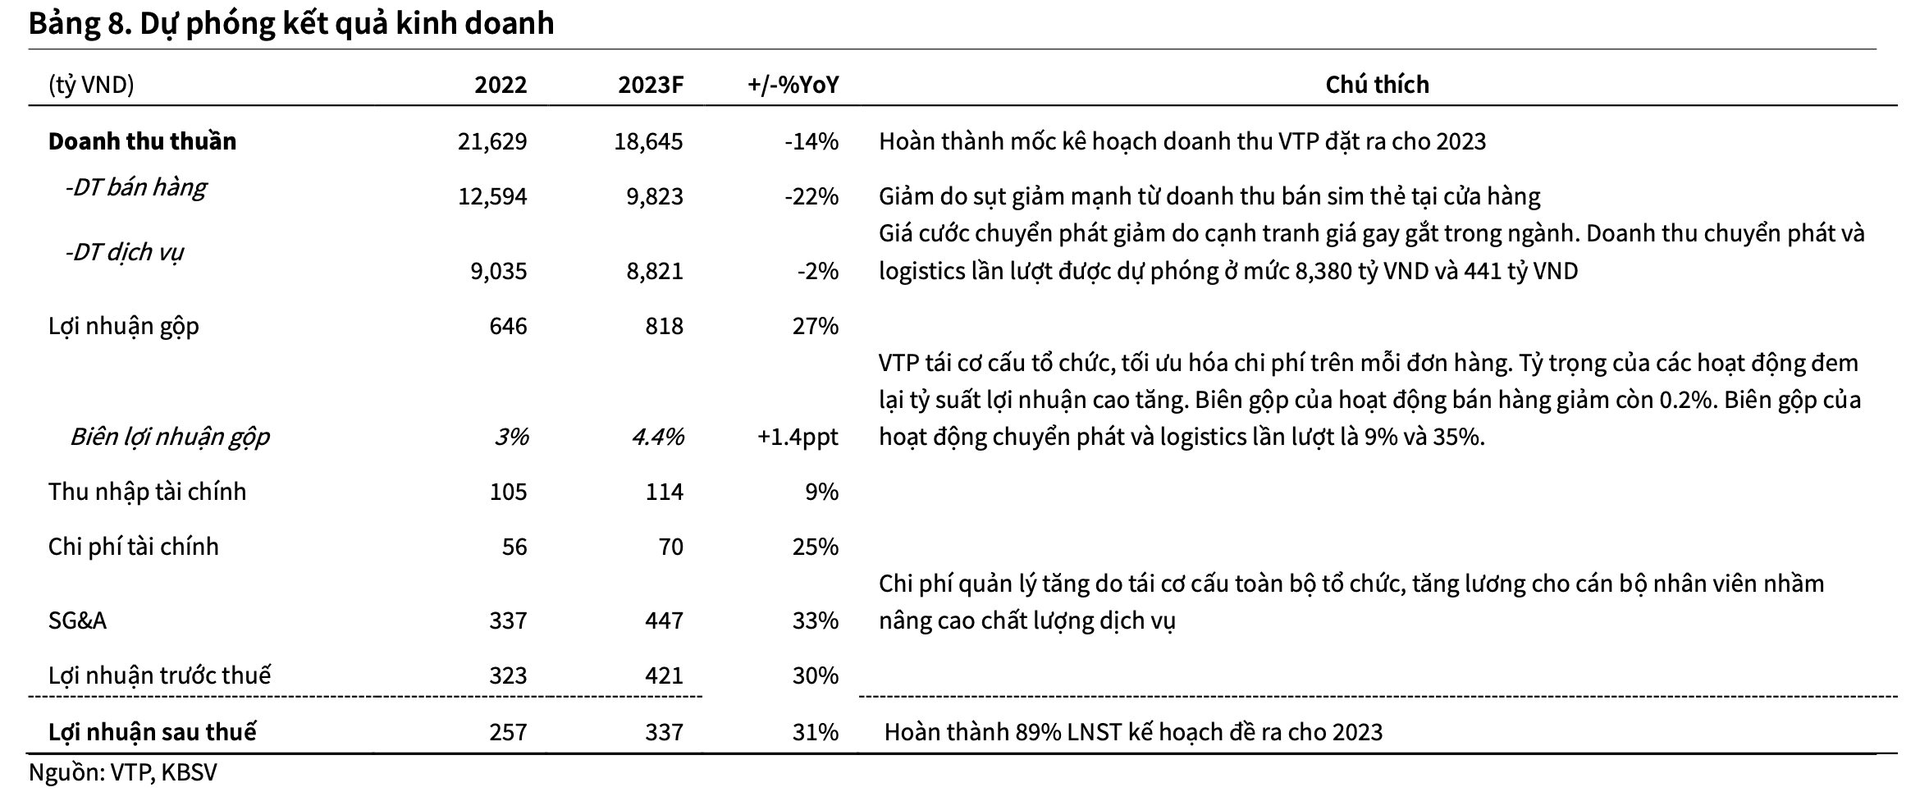 Cạnh tranh về giá dịch vụ chuyển phát ngày càng gay gắt, Viettel Post (VTP) giảm tốc tăng thị phần, âm thầm cải thiện biên lợi nhuận - Ảnh 6.